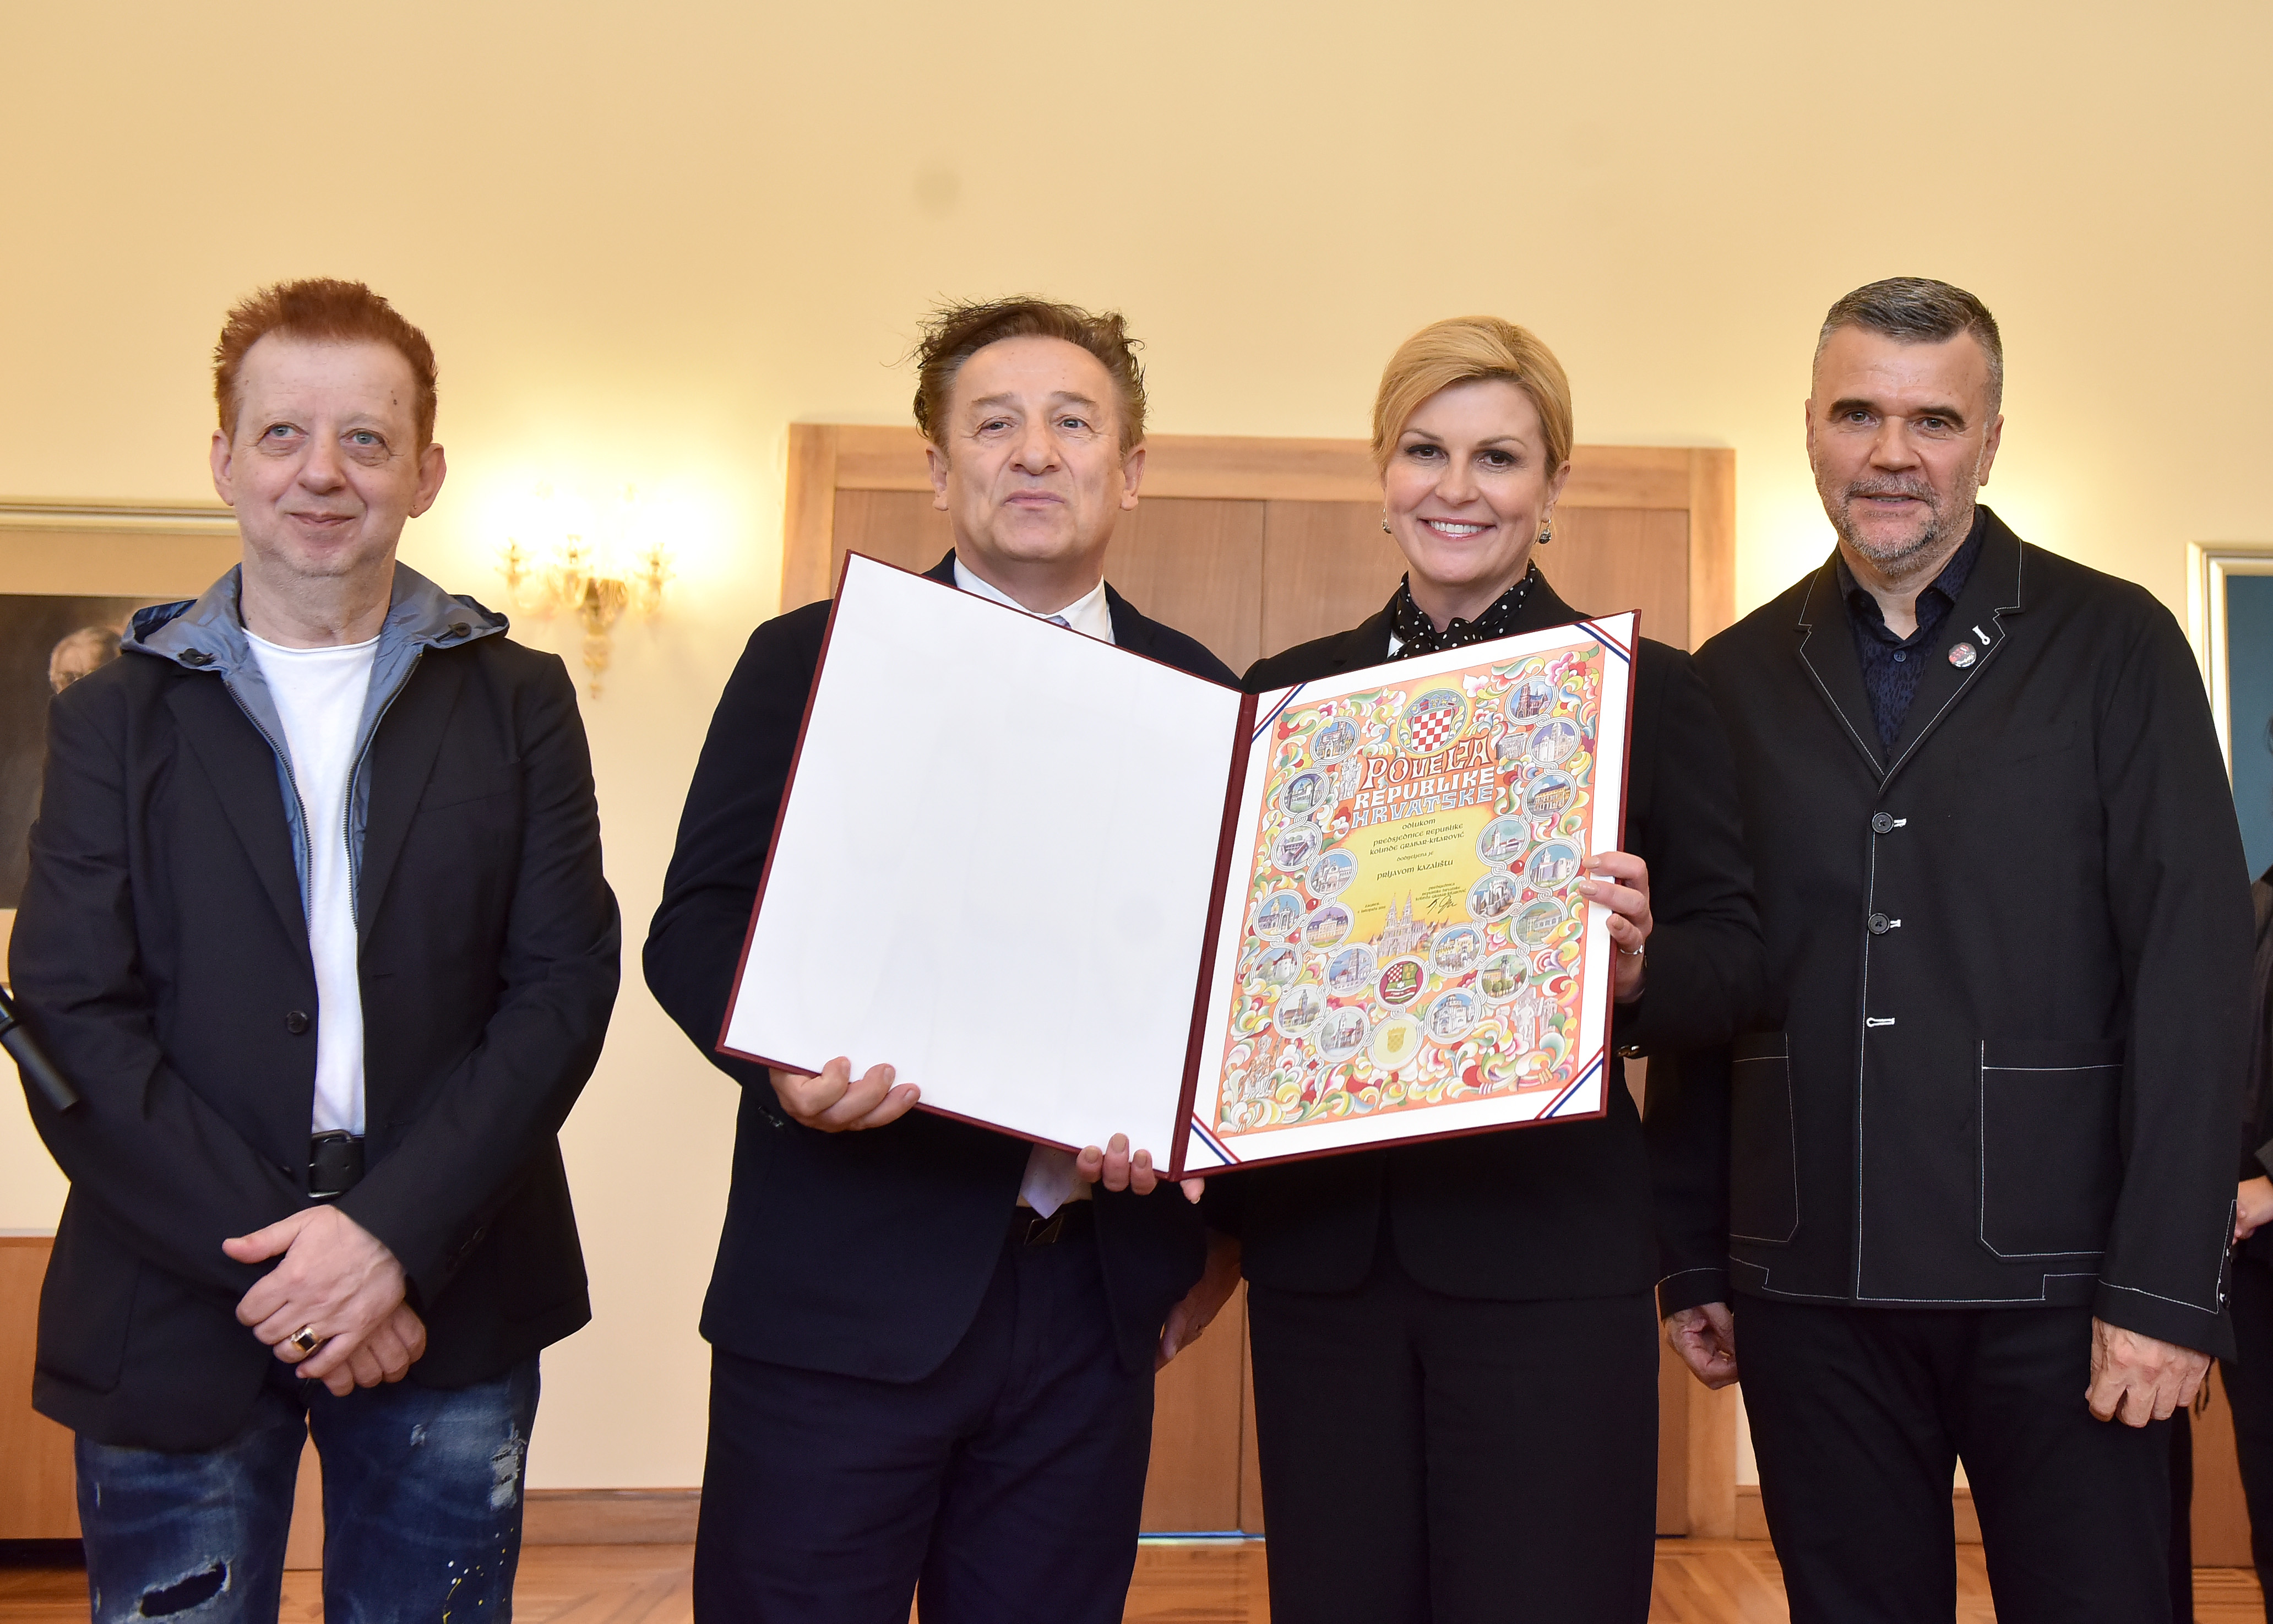 Predsjednica dodijelila Povelju Republike Hrvatske glazbenom sastavu Prljavo kazalište